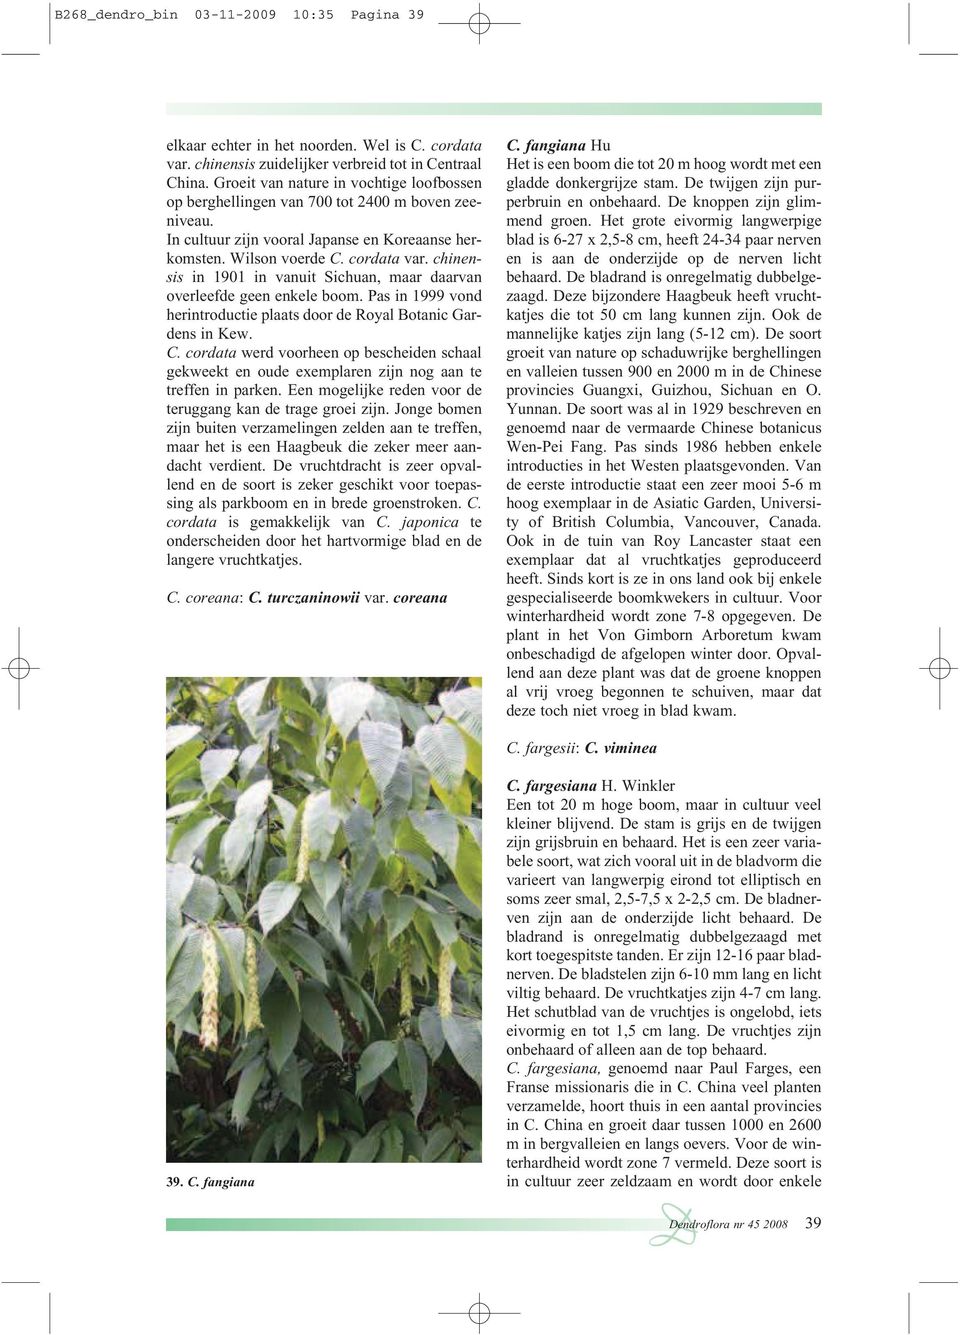 chinensis in 1901 in vanuit Sichuan, maar daarvan overleefde geen enkele boom. Pas in 1999 vond herintroductie plaats door de Royal Botanic Gardens in Kew. C.